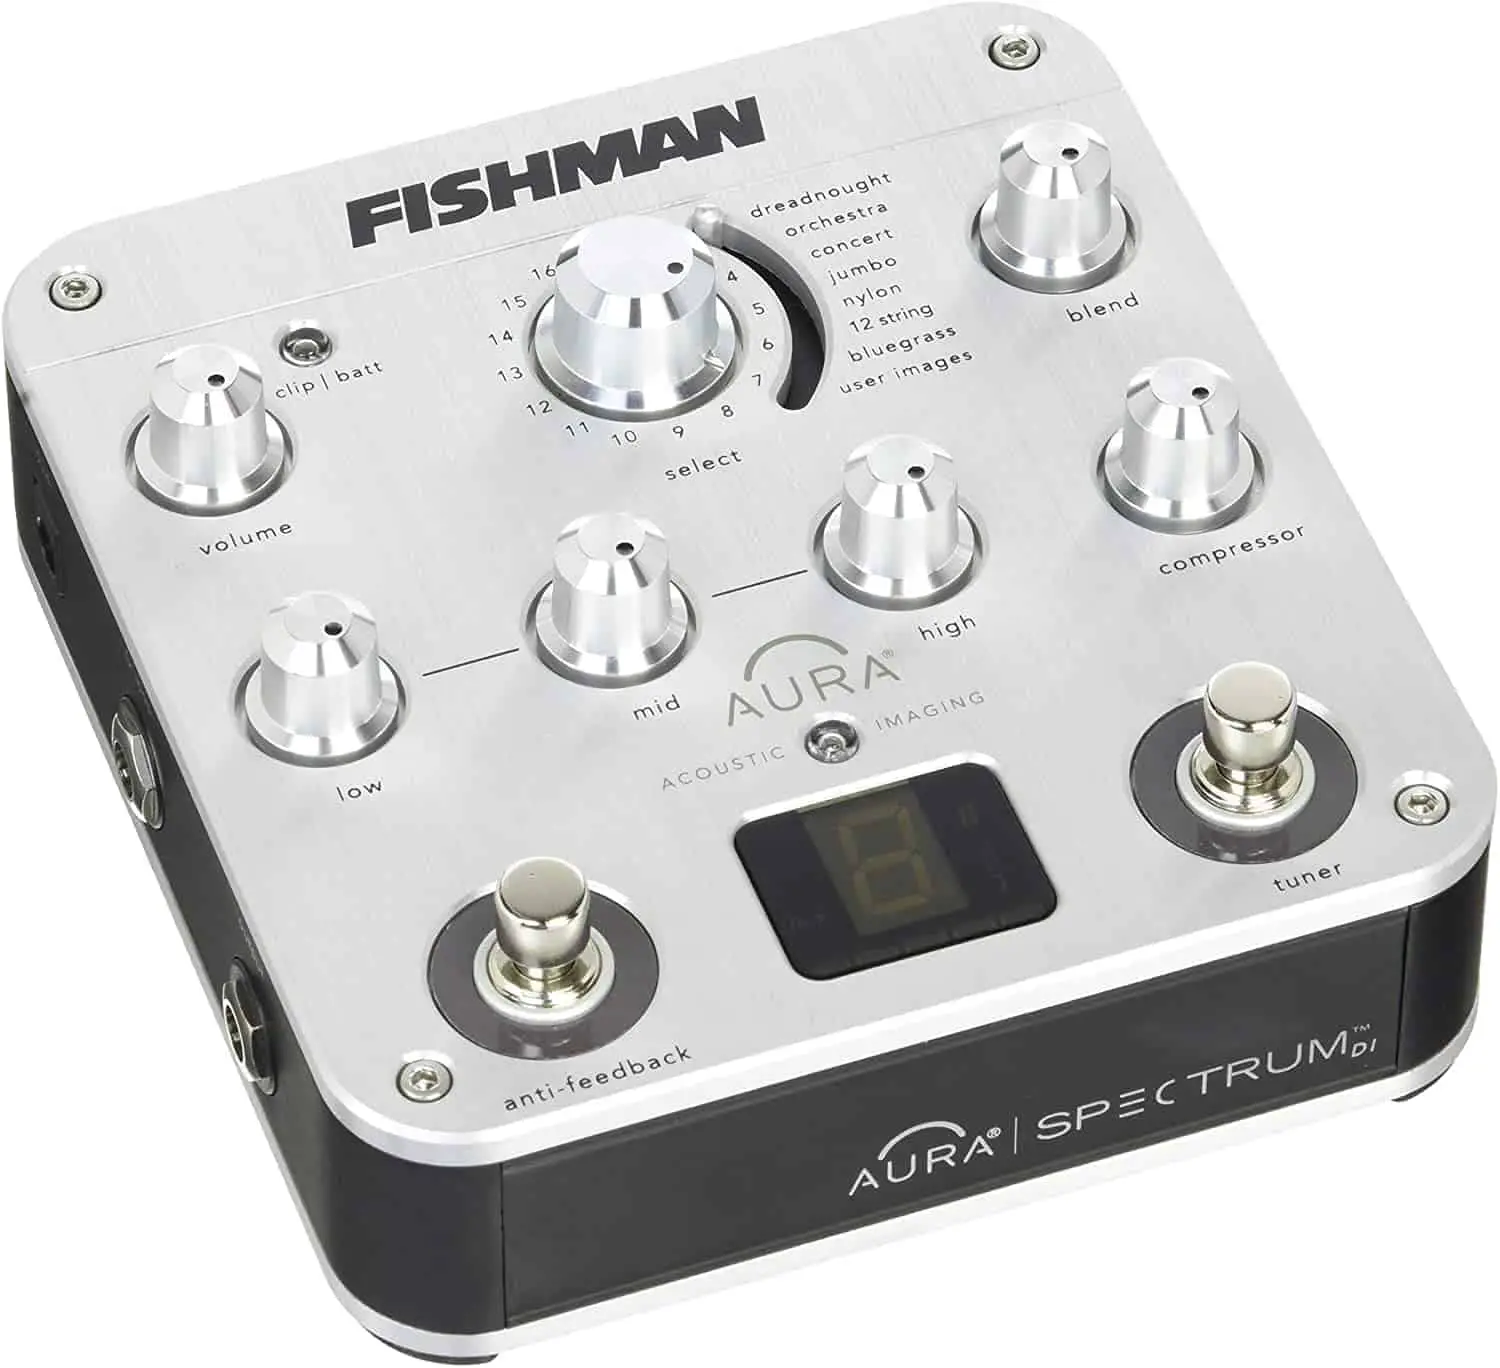 Pedal preamp akustik terbaik: Fishman Aura Spectrum DI